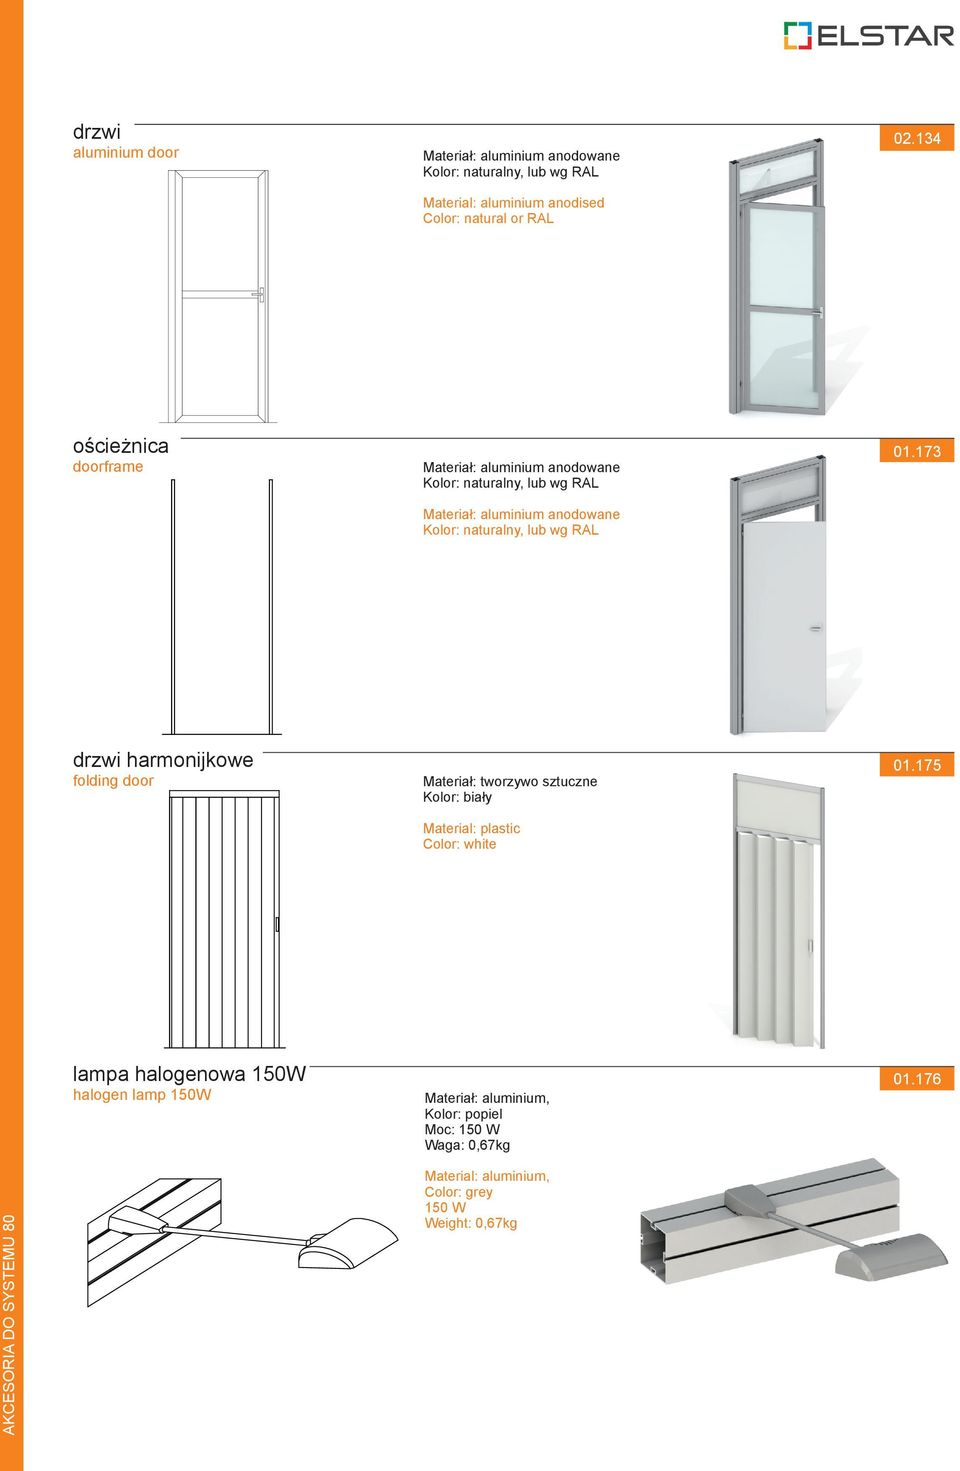 173 drzwi harmonijkowe folding door Materiał: tworzywo sztuczne Kolor: biały Material: plastic Color: white 01.